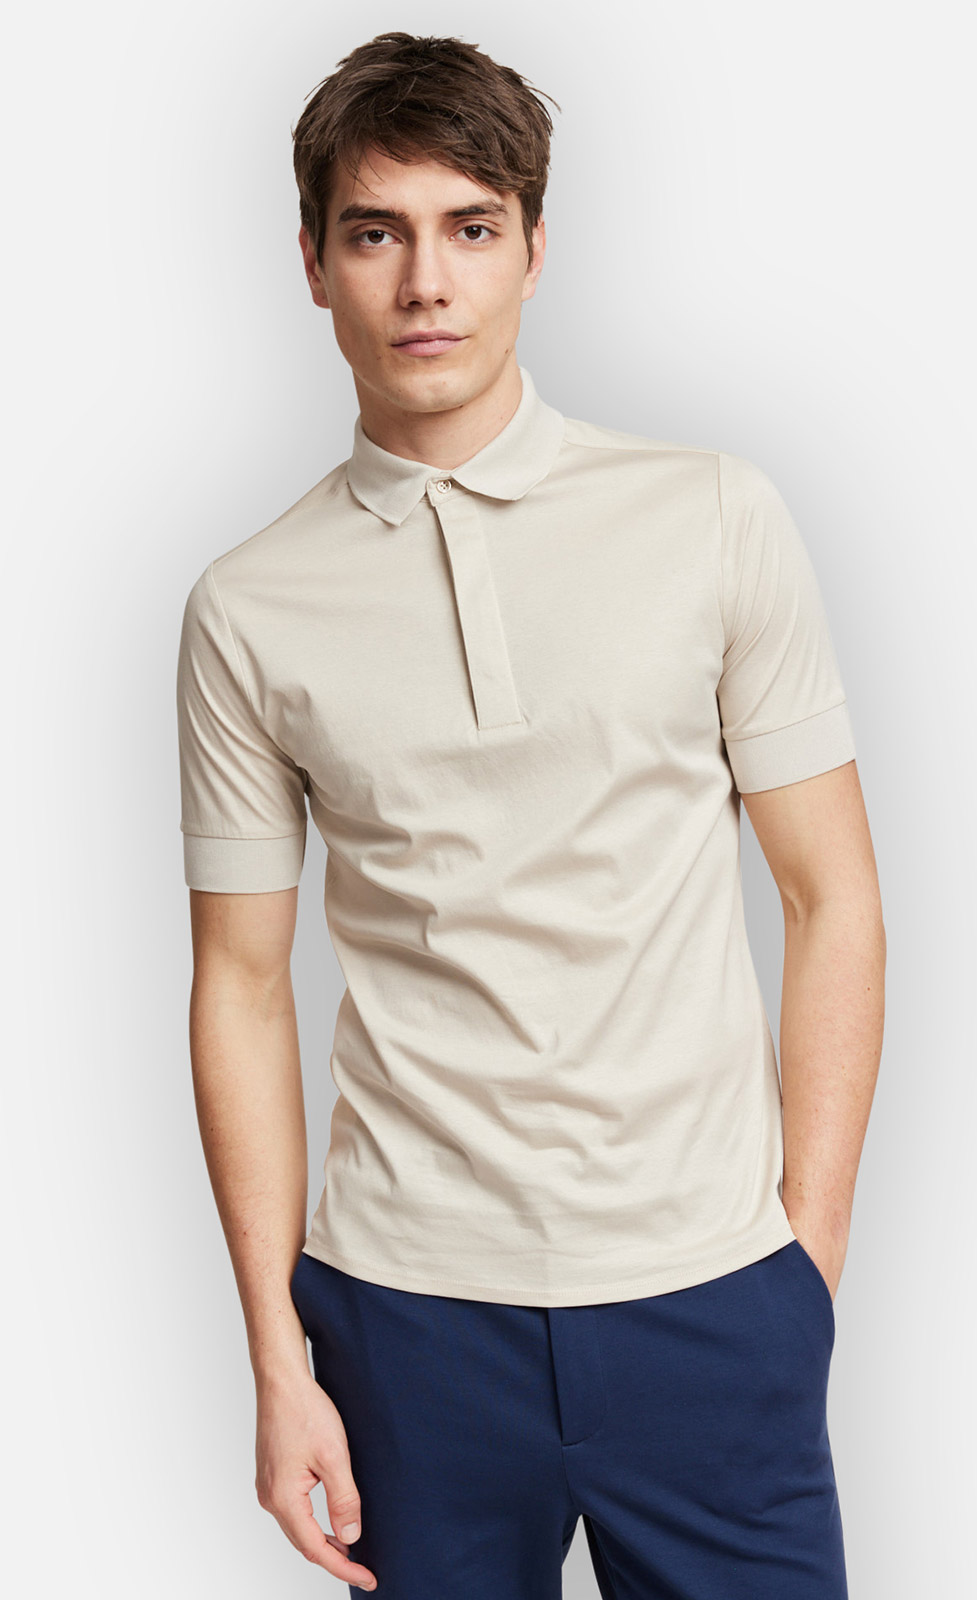 Wilson - Poloshirt aus merzerisierter Baumwolle